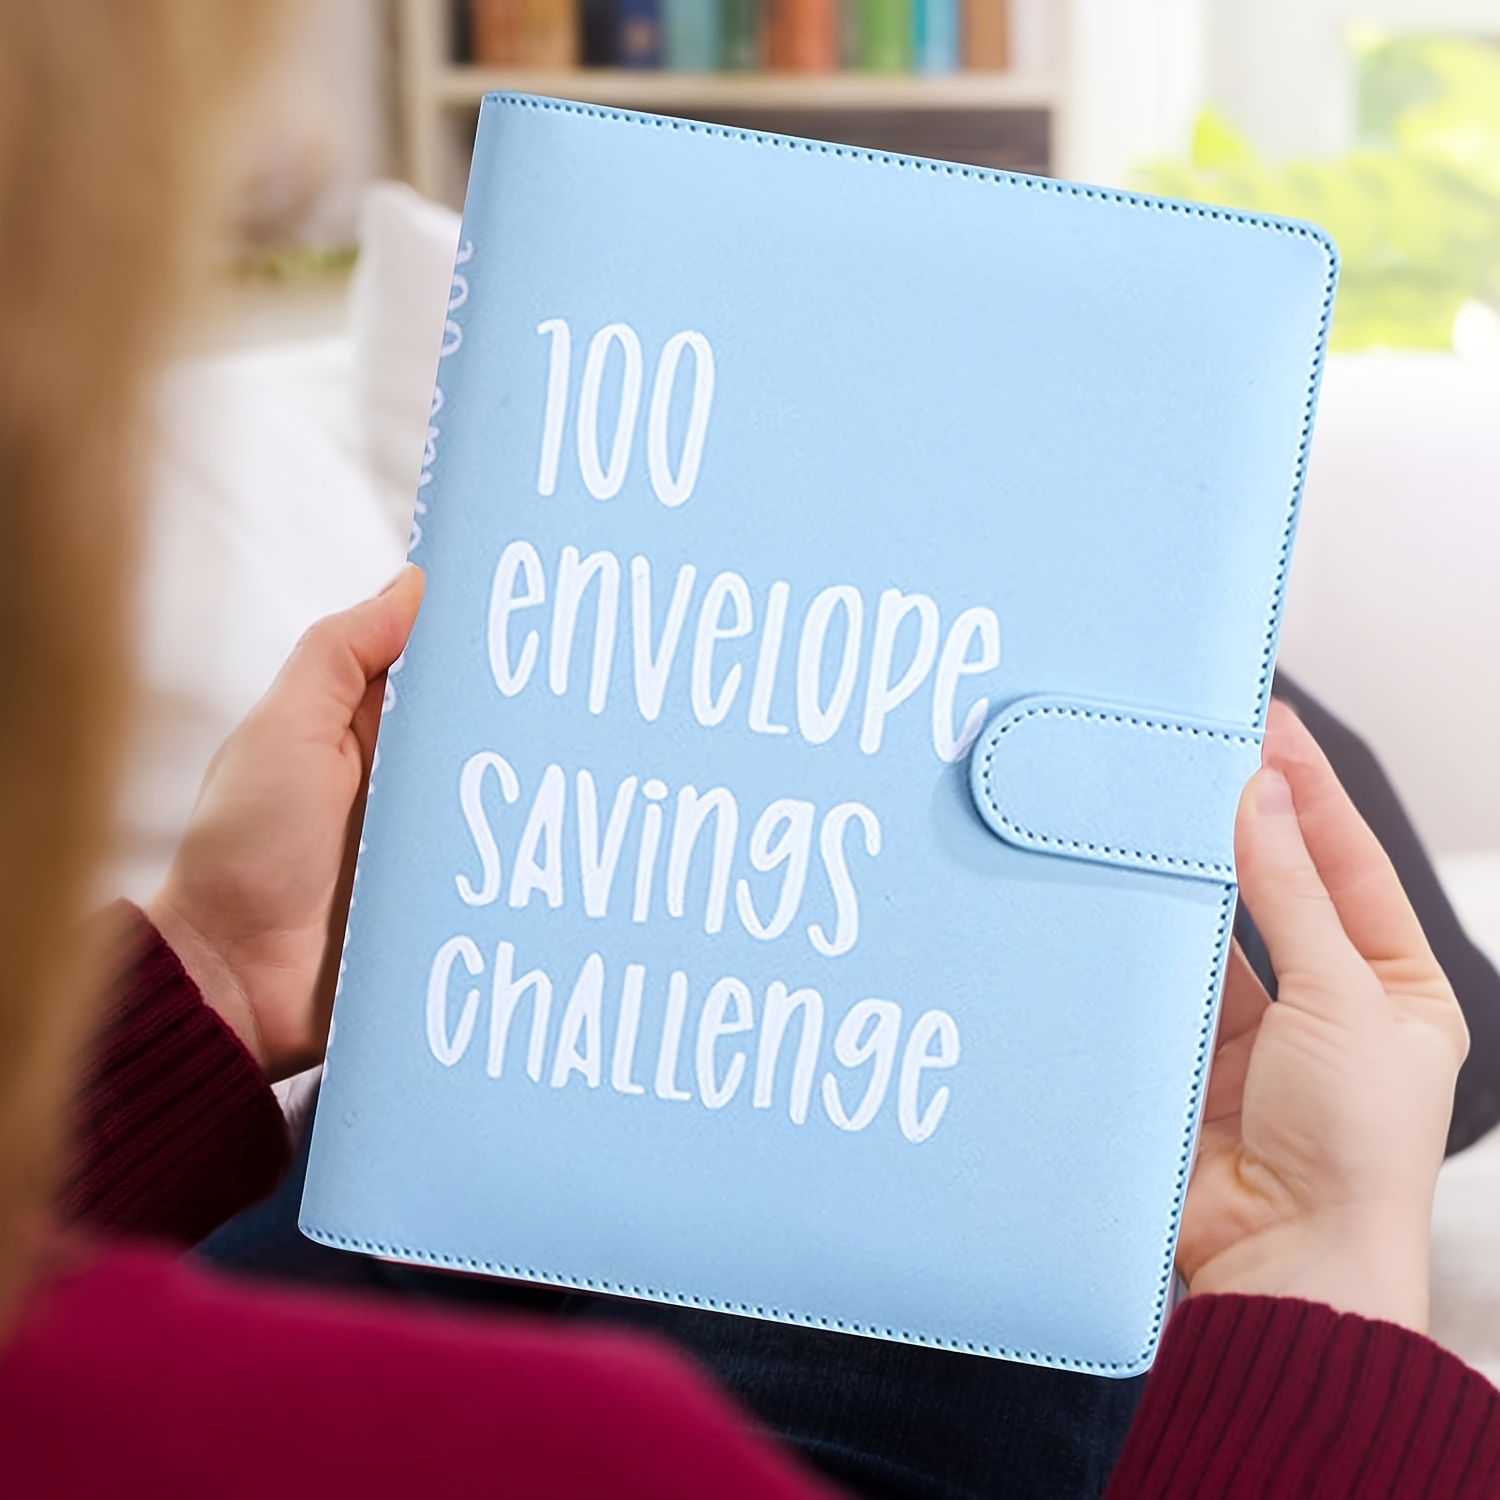 Carpeta de desafío de 100 sobres, forma fácil y divertida de ahorrar $  5,050, carpeta de desafíos de ahorro, carpeta de presupuesto con sobres de  efectivo, libro planificador de presupuesto